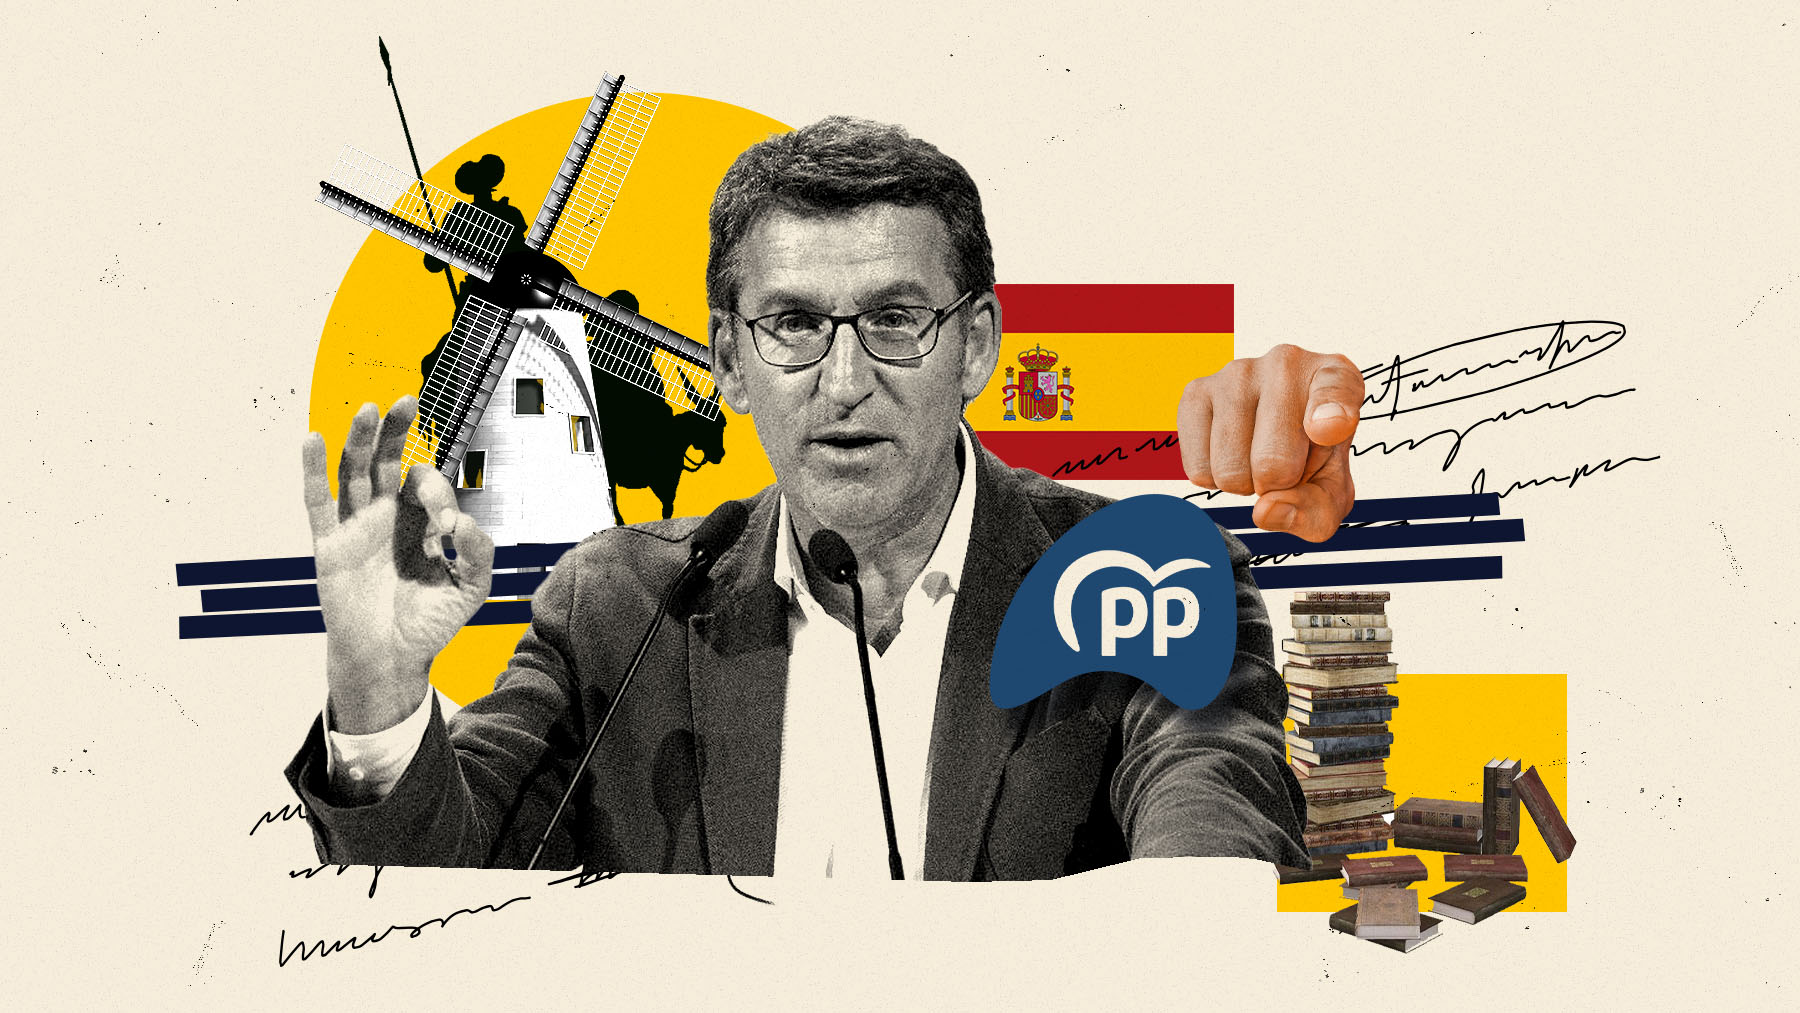 El PP apuesta por defender la cultura española frente aquellos que pretendan atacarla